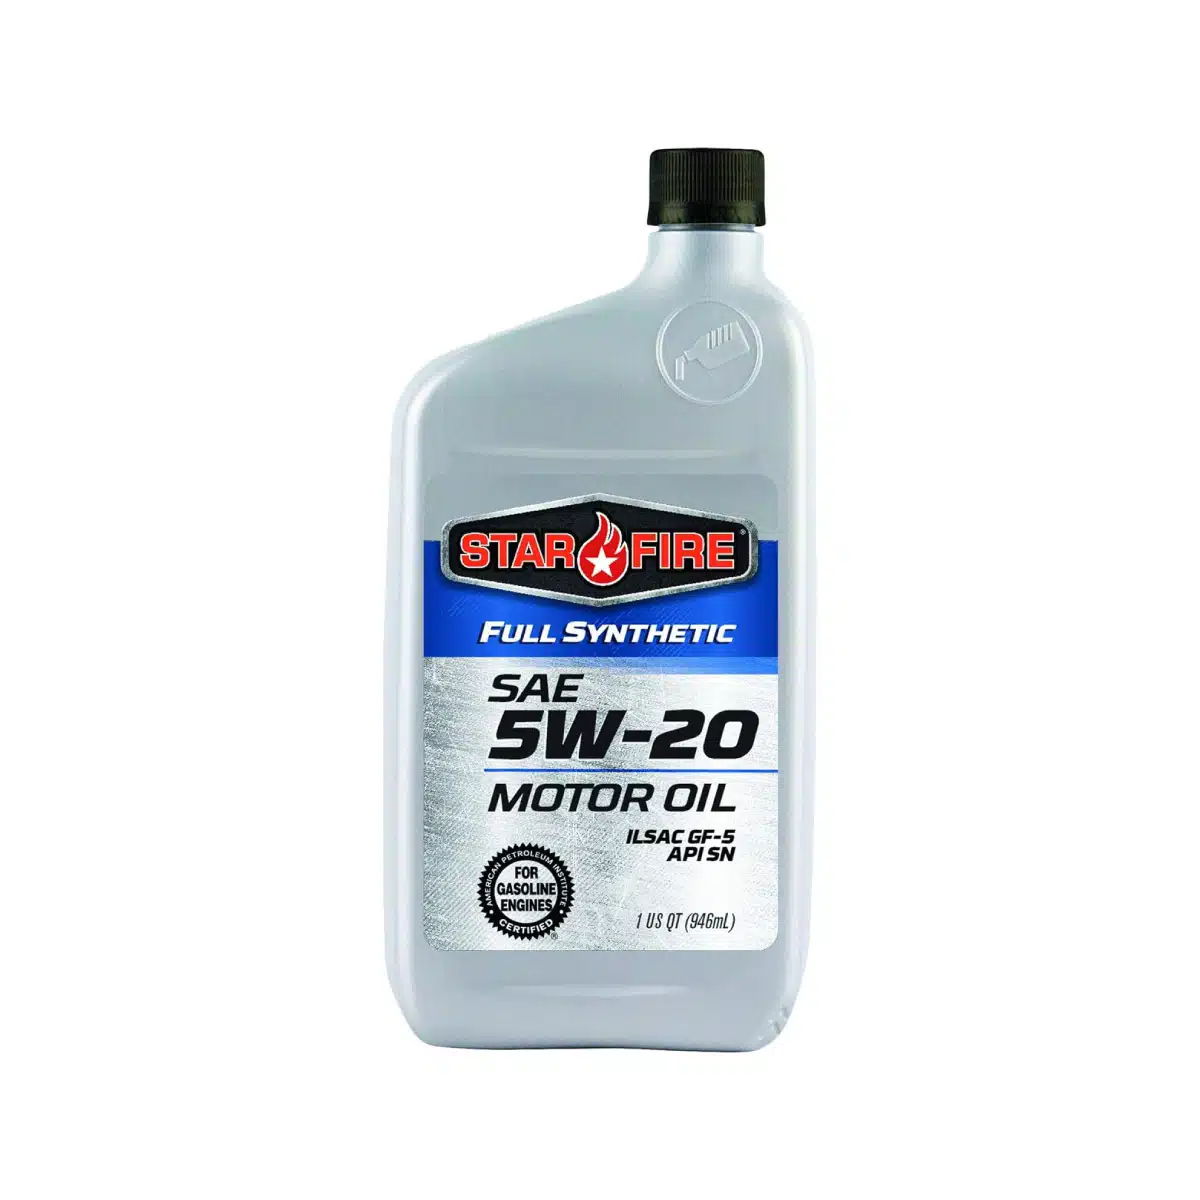 Full Synthetic Motor Oil 5w-20 dexo 1 API SP Quart